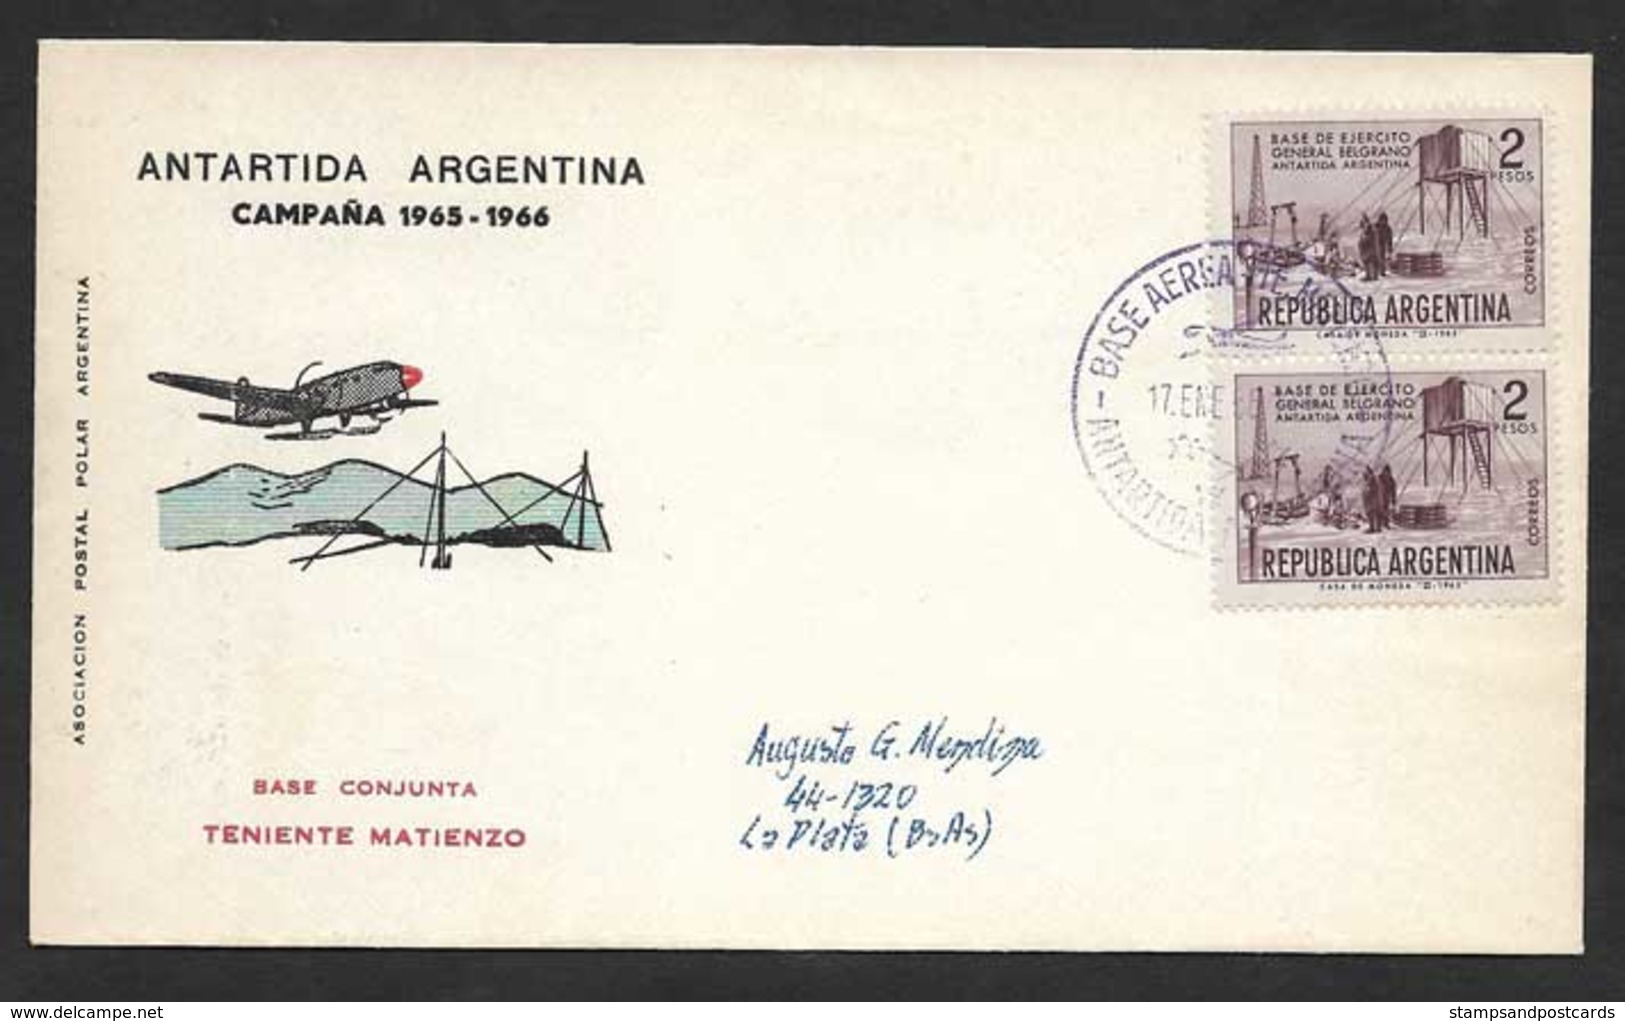 Argentine Base Aerienne Teniente Matienzo Antarctique 1966 Argentina Antartic Aerial Base - Poolvluchten